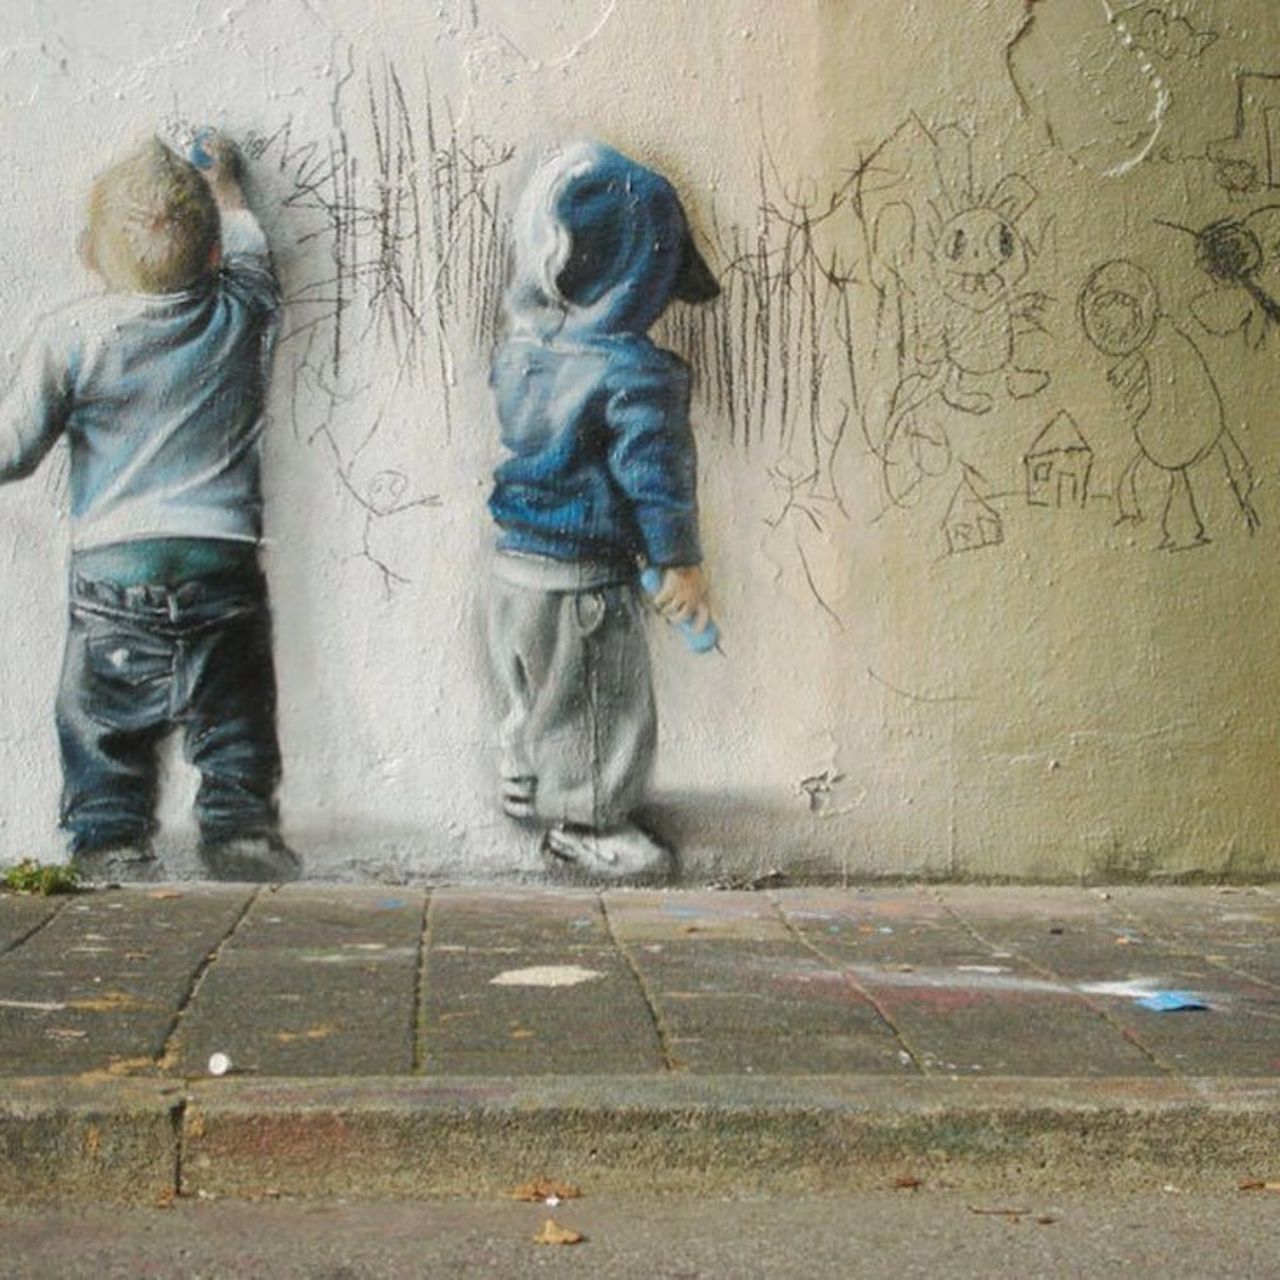 Kids #street #streetart #streetartparis #graff #graffiti #wallart #sprayart #urban #urbain #urbanart #urbainart #ar… https://t.co/Wx8T7cudFd